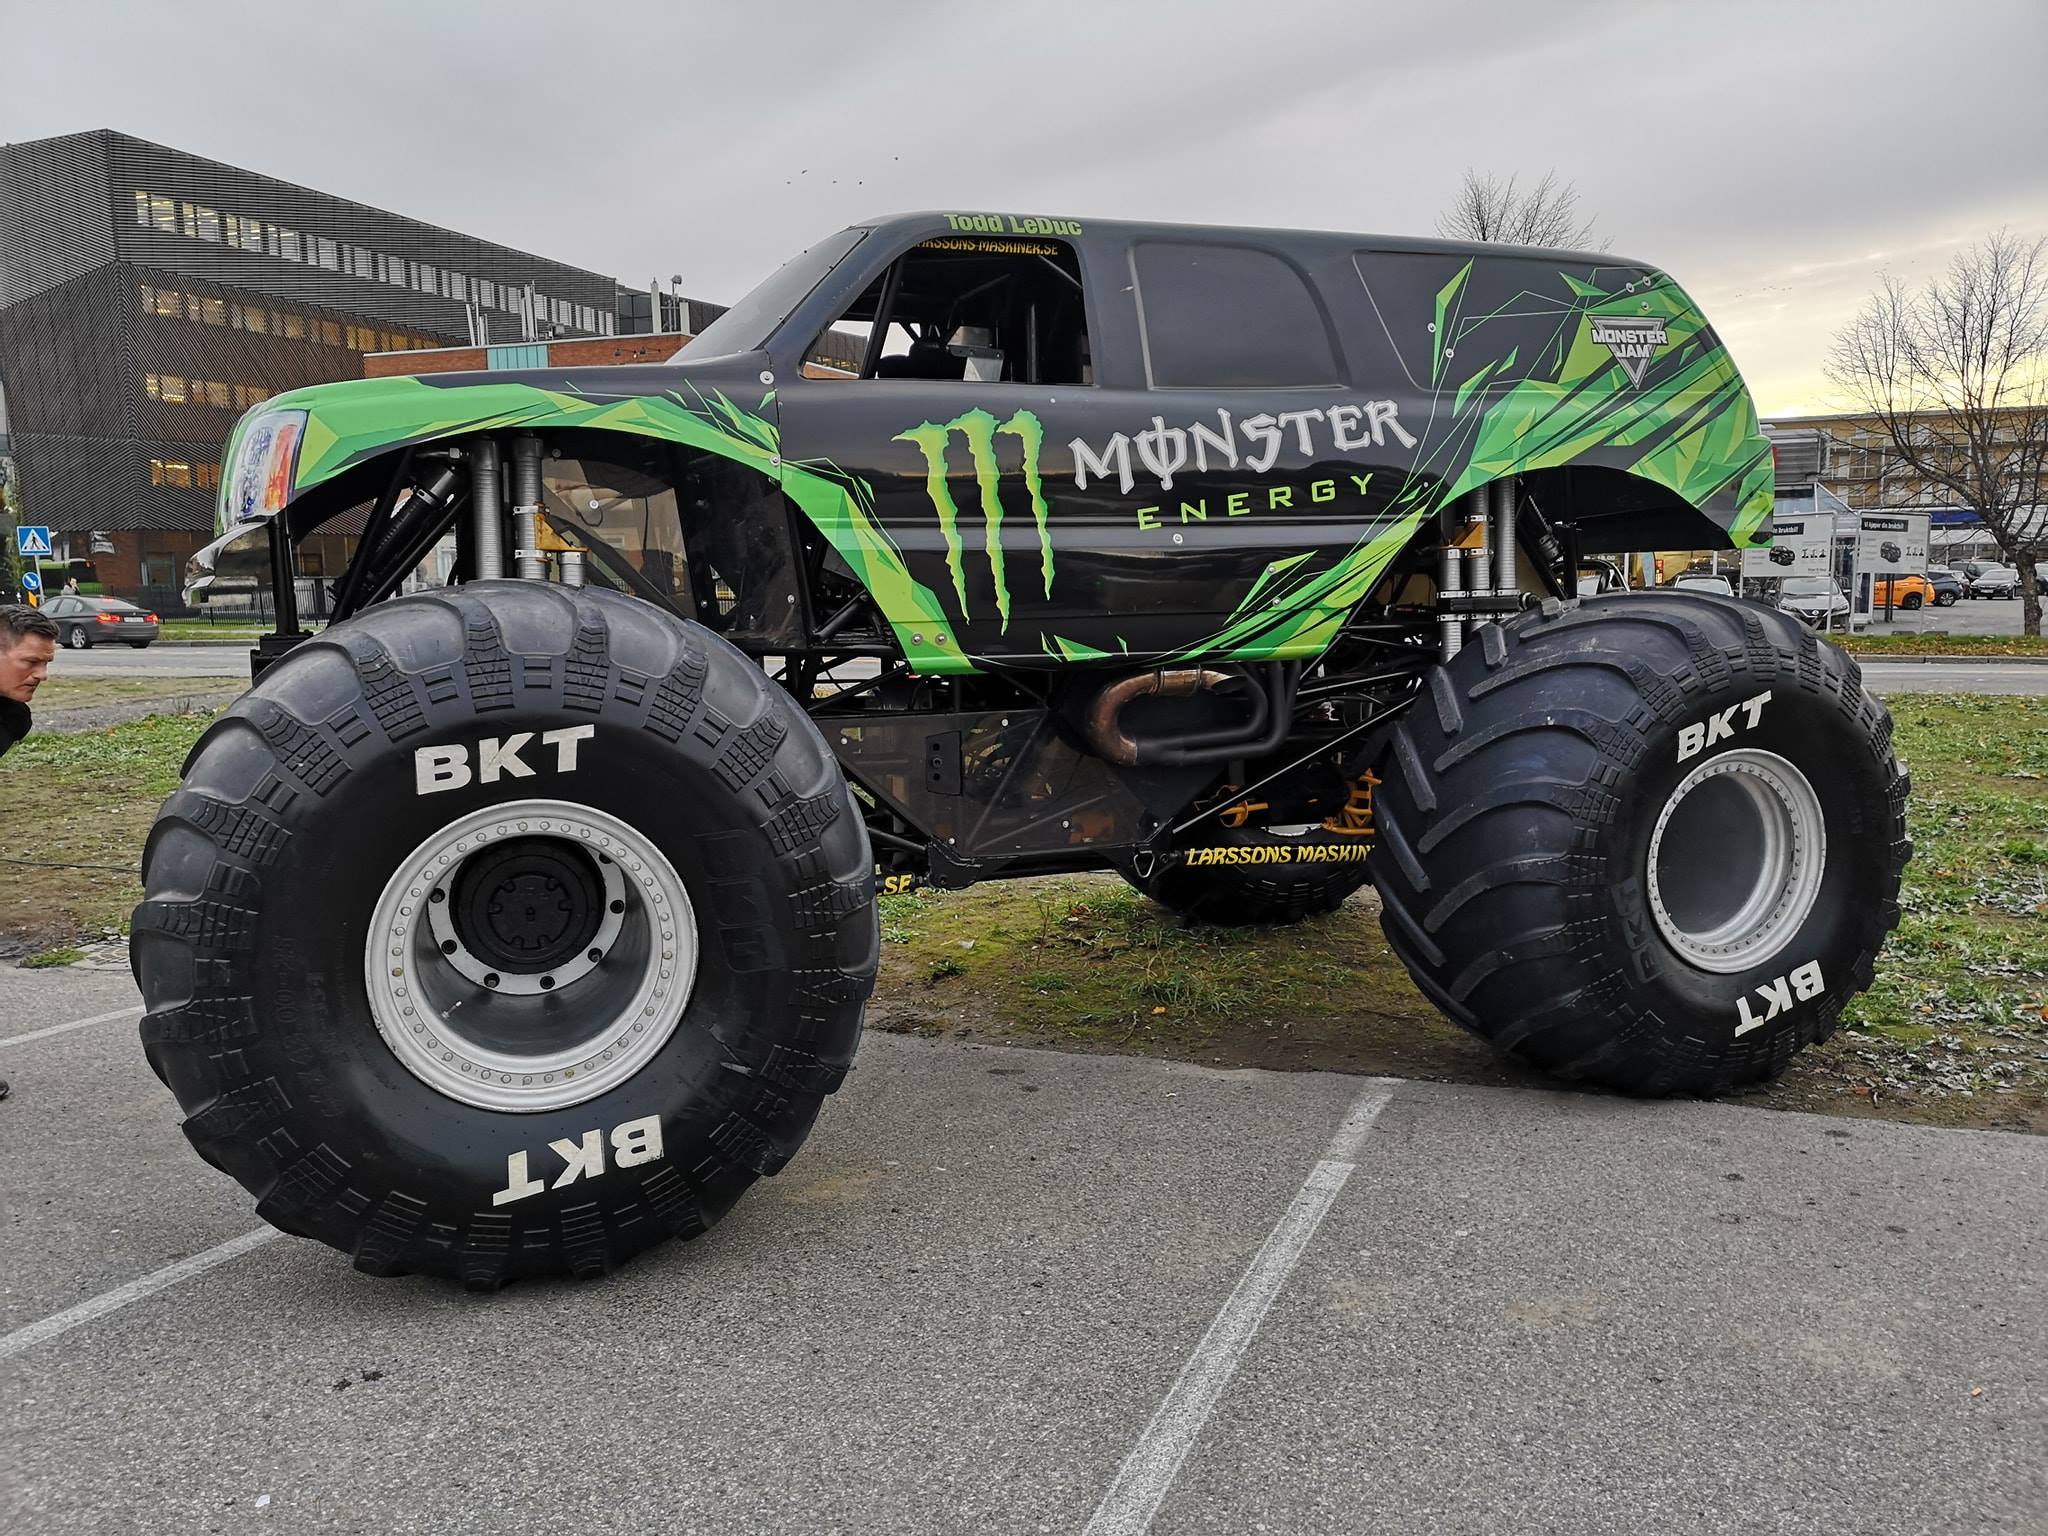 Monster Energy Monster Jam Truck